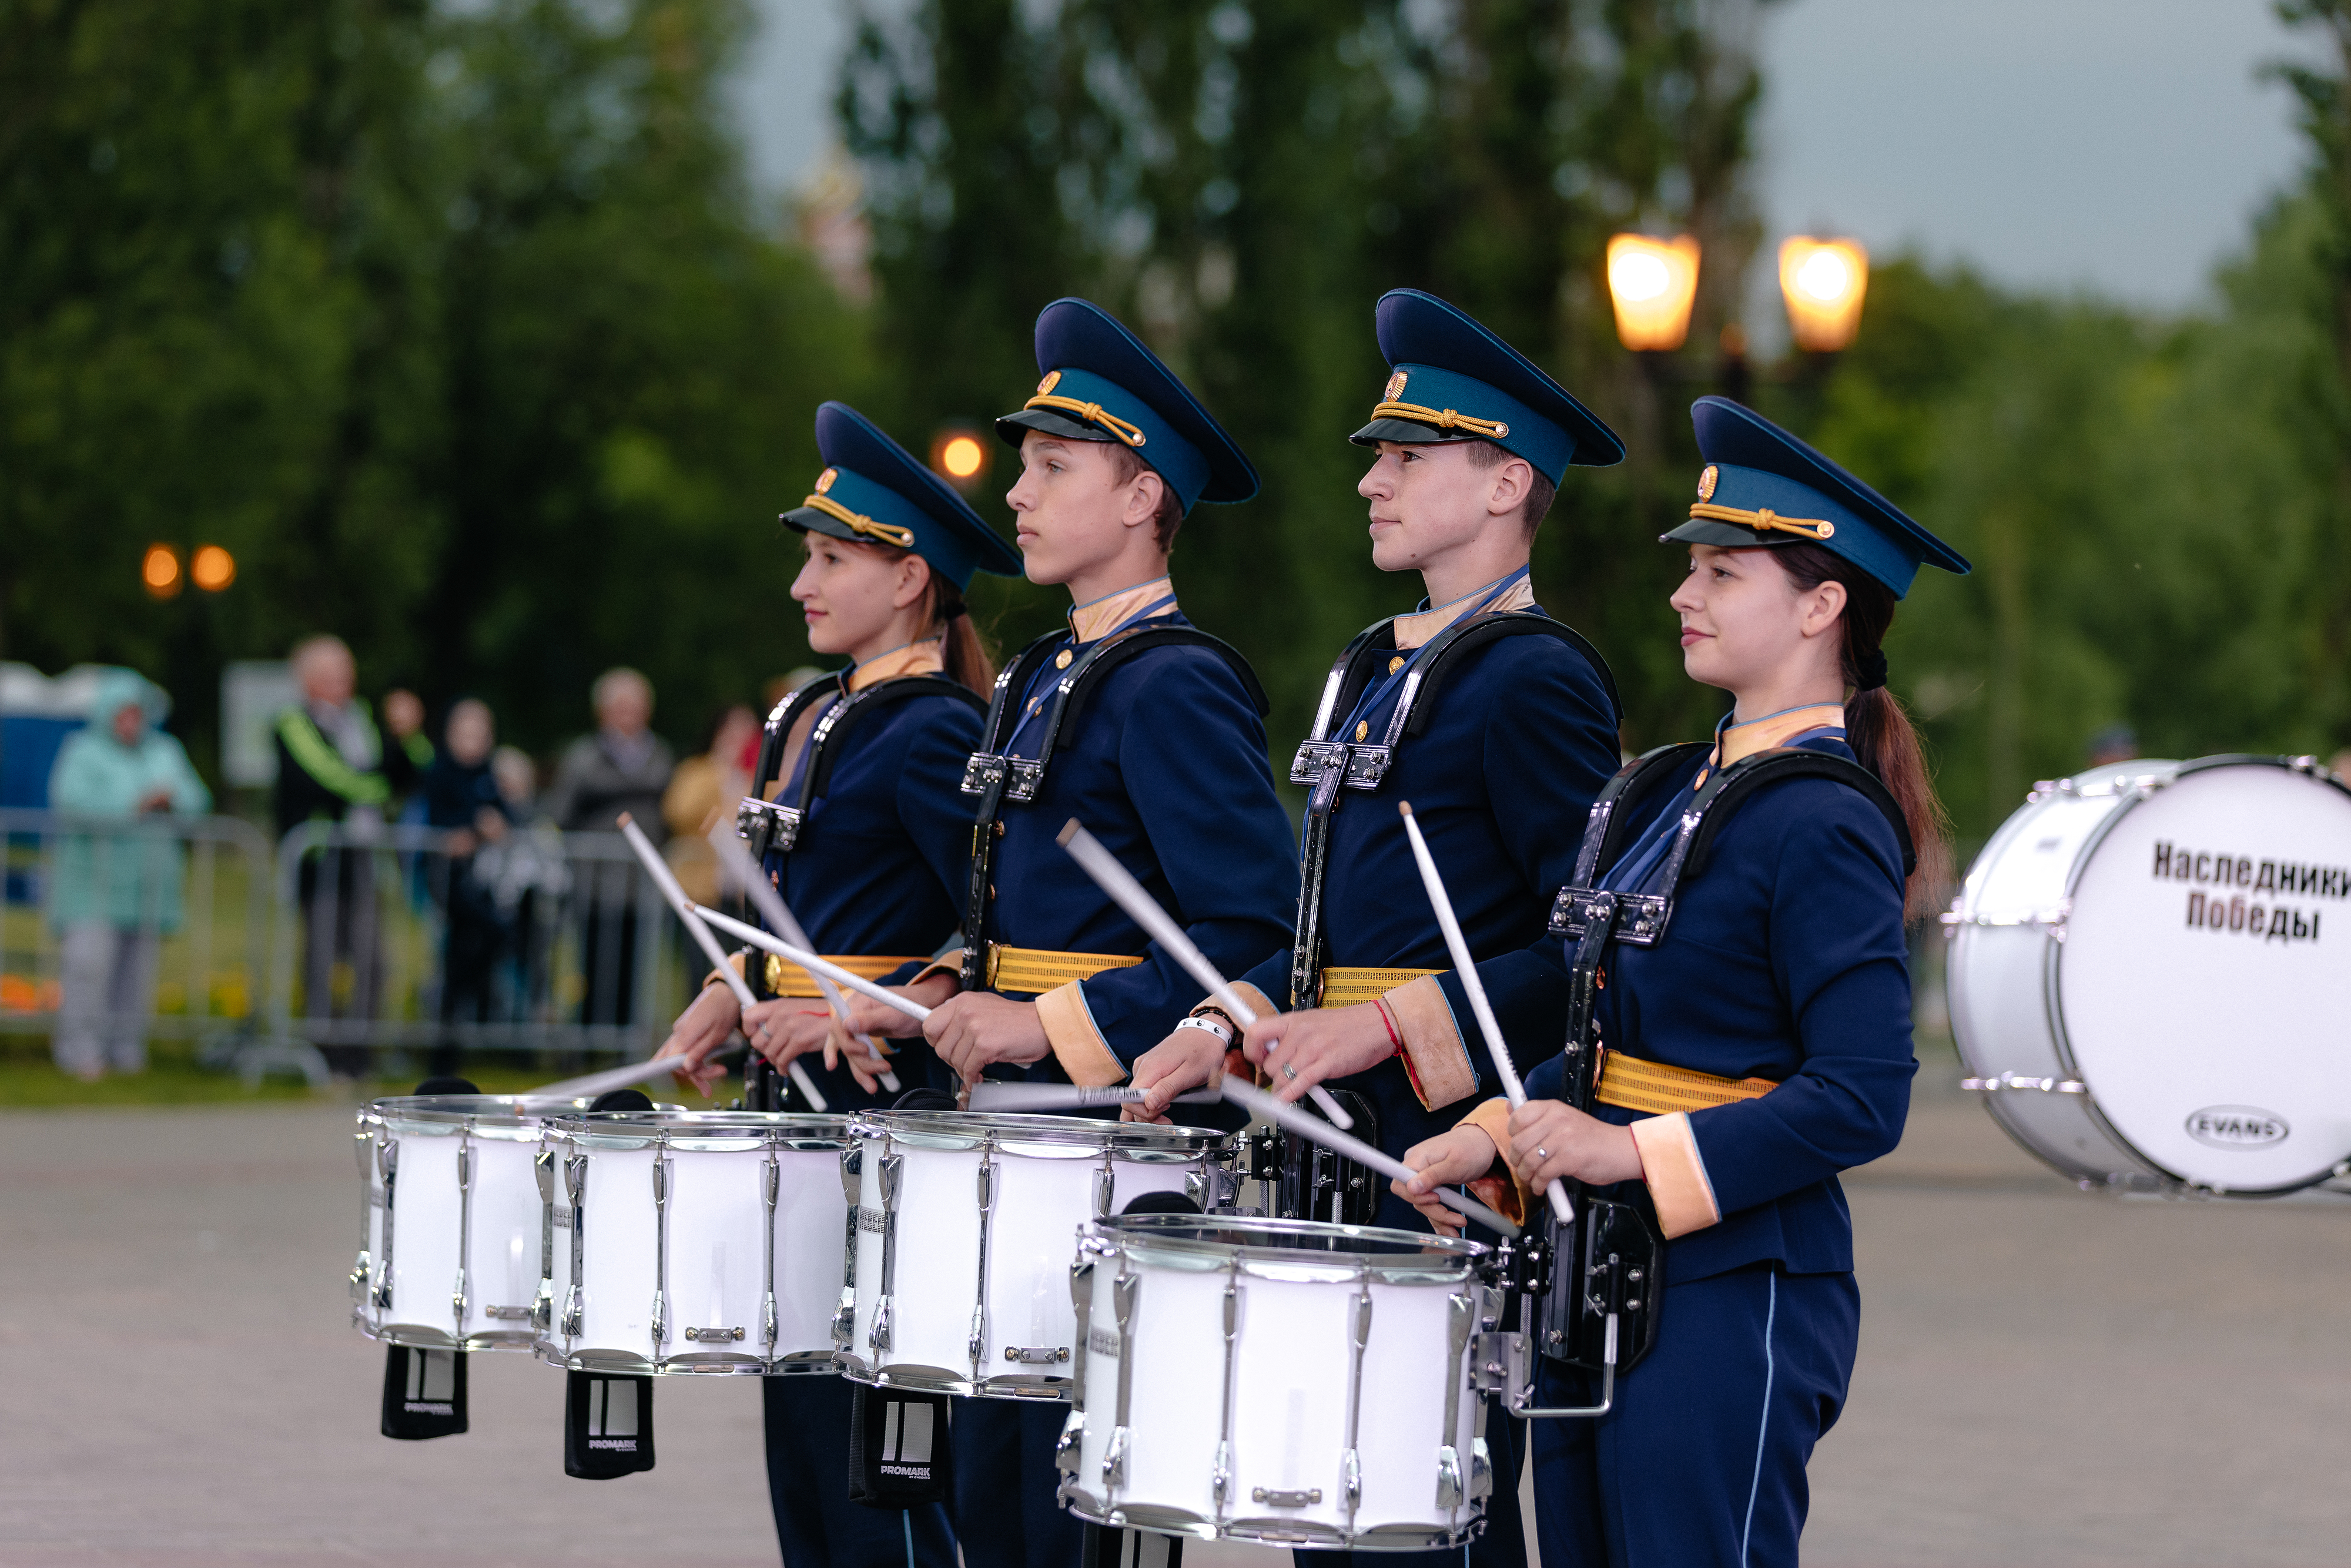 В Петропавловской крепости впервые пройдет парад духовых детско-юношеских оркестров1